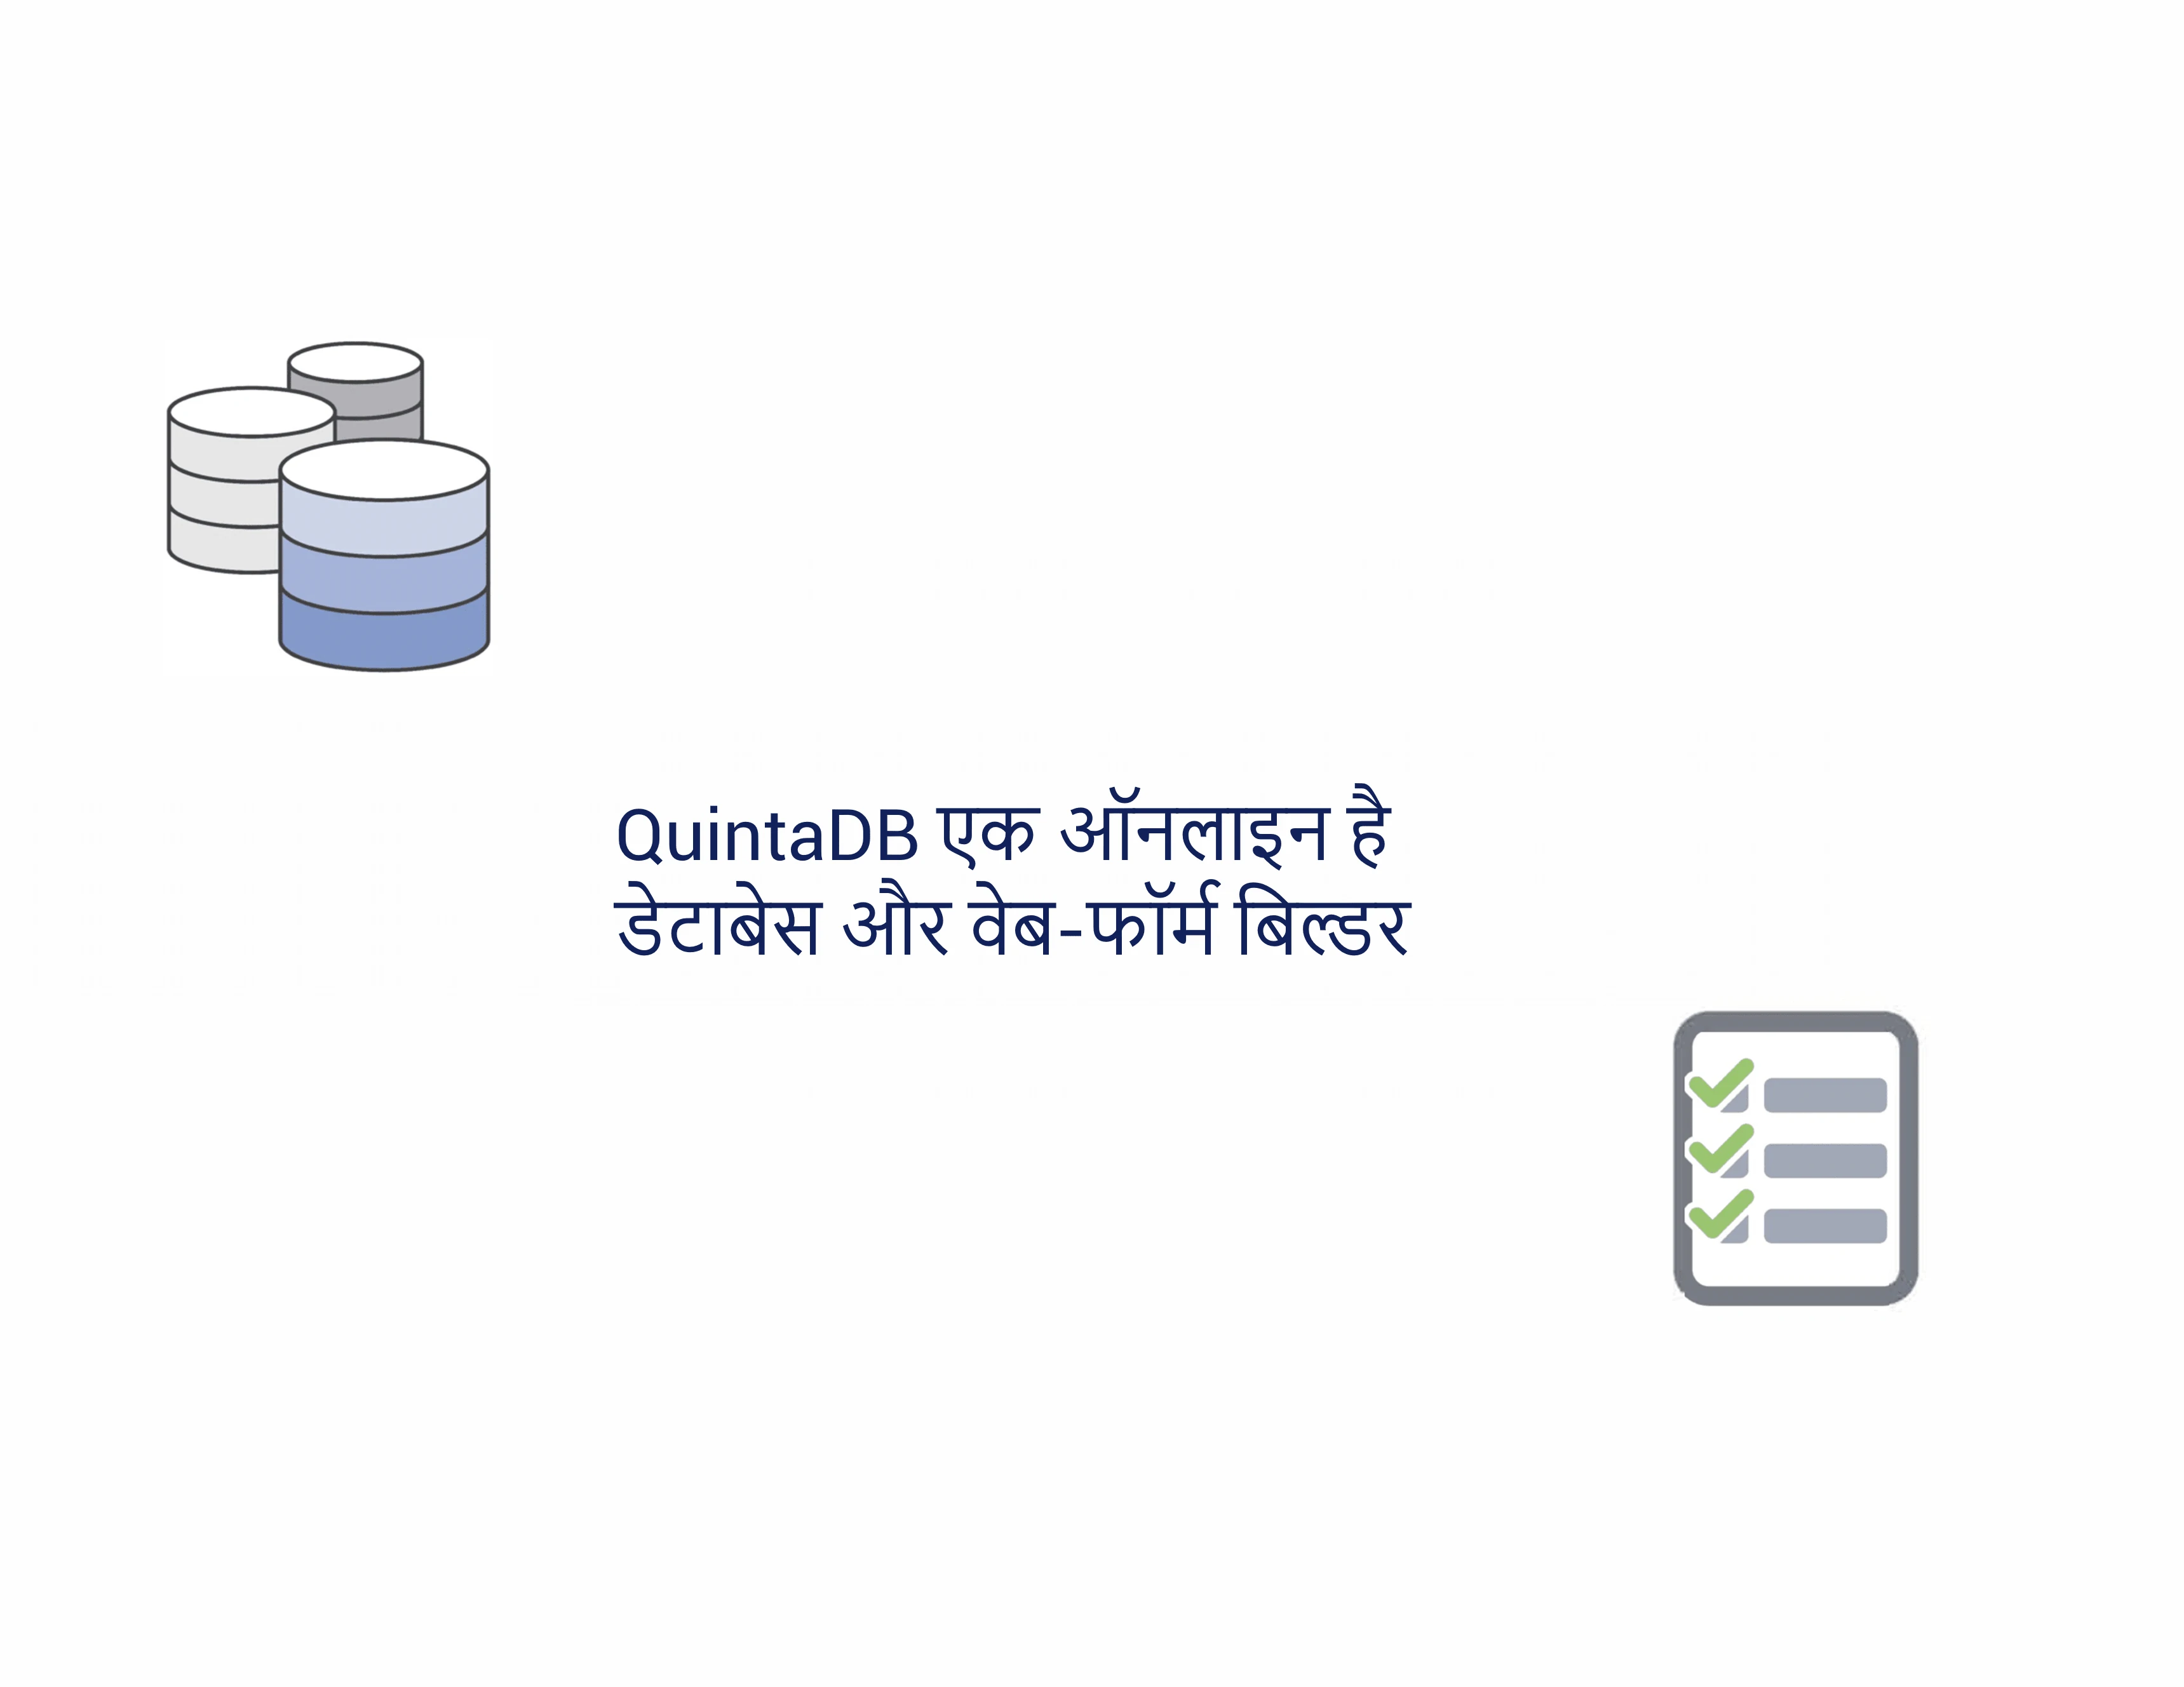 QuintaDB सर्वश्रेष्ठ ऑनलाइन डेटाबेस और प्रपत्र निर्माता